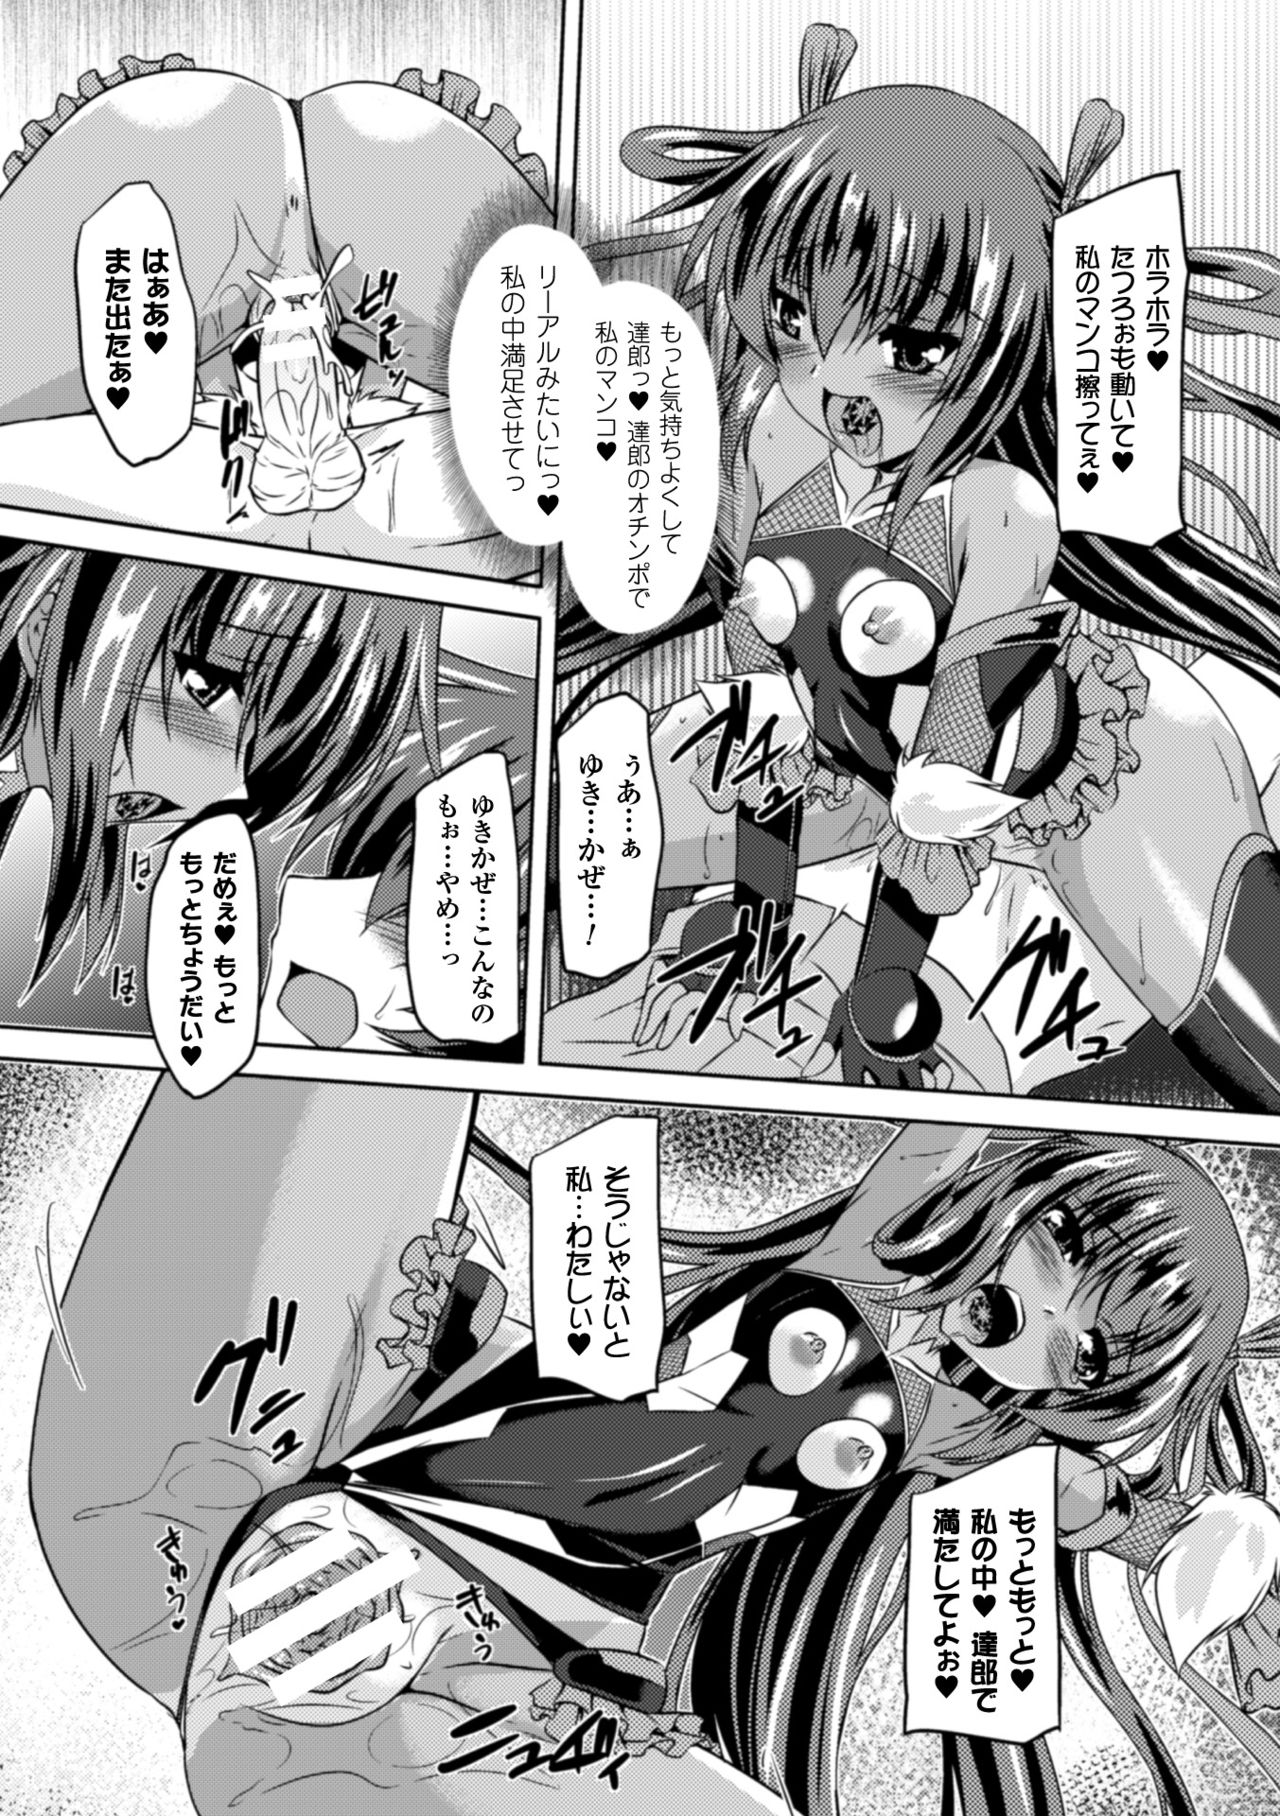 [Anthology] Seigi no Heroine Kangoku File Vol. 2 [Digital] page 12 full